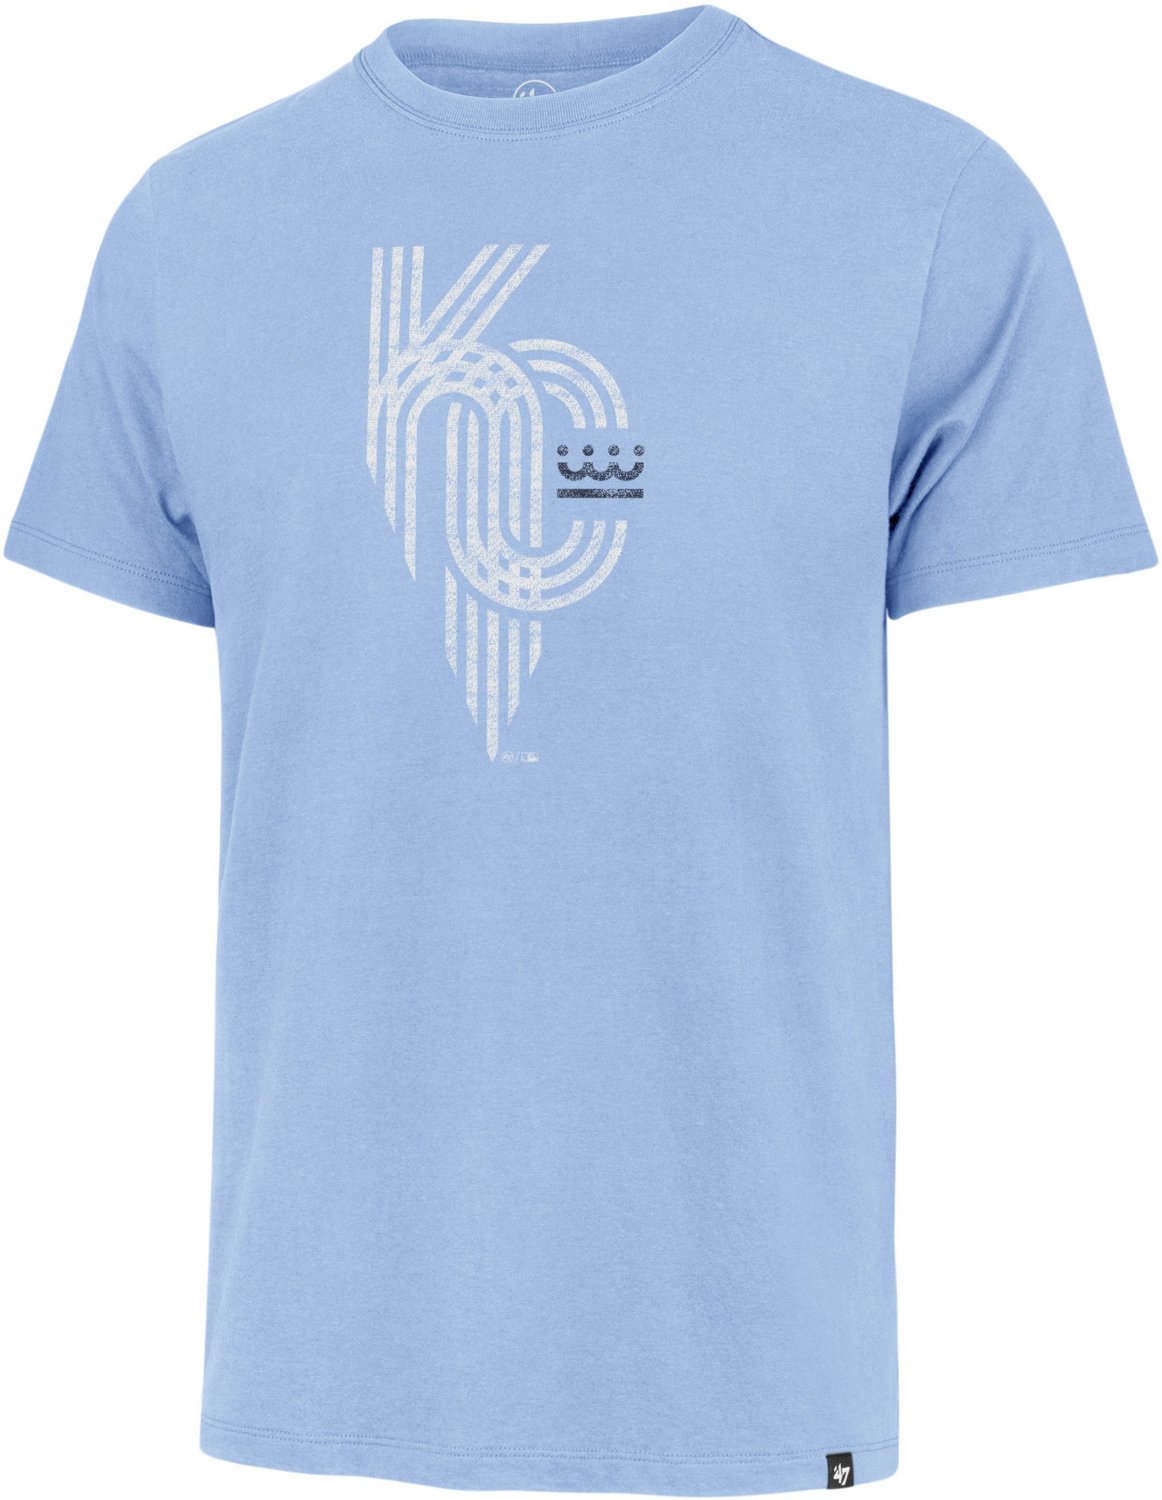 Kansas City Royals Big & Tall Sports Clothing